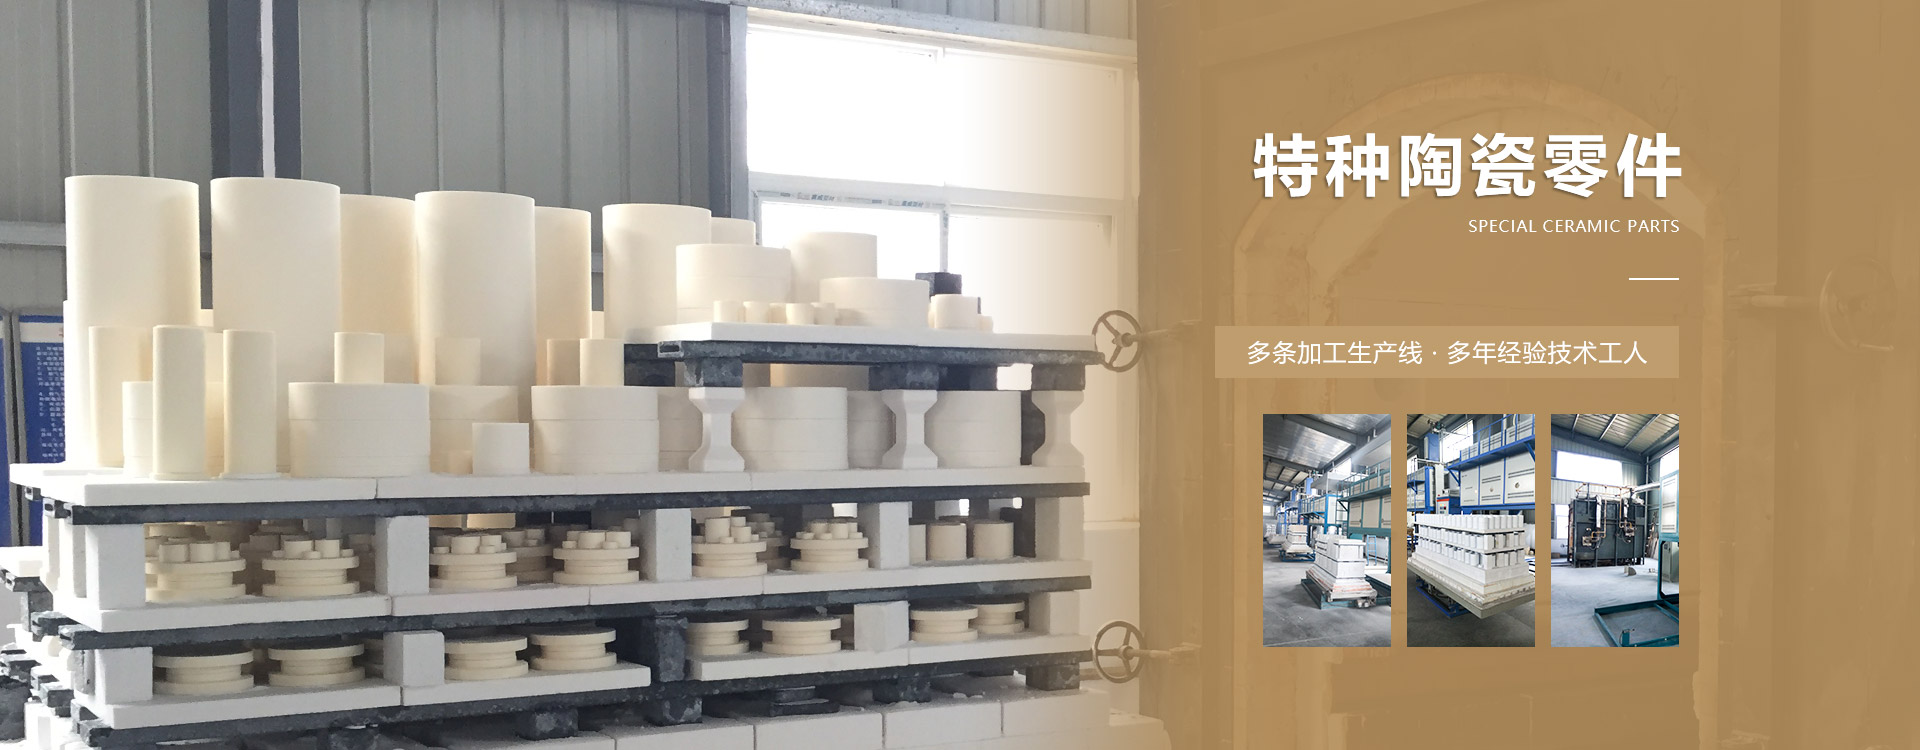 新鄉市固元陶瓷科技有限公司